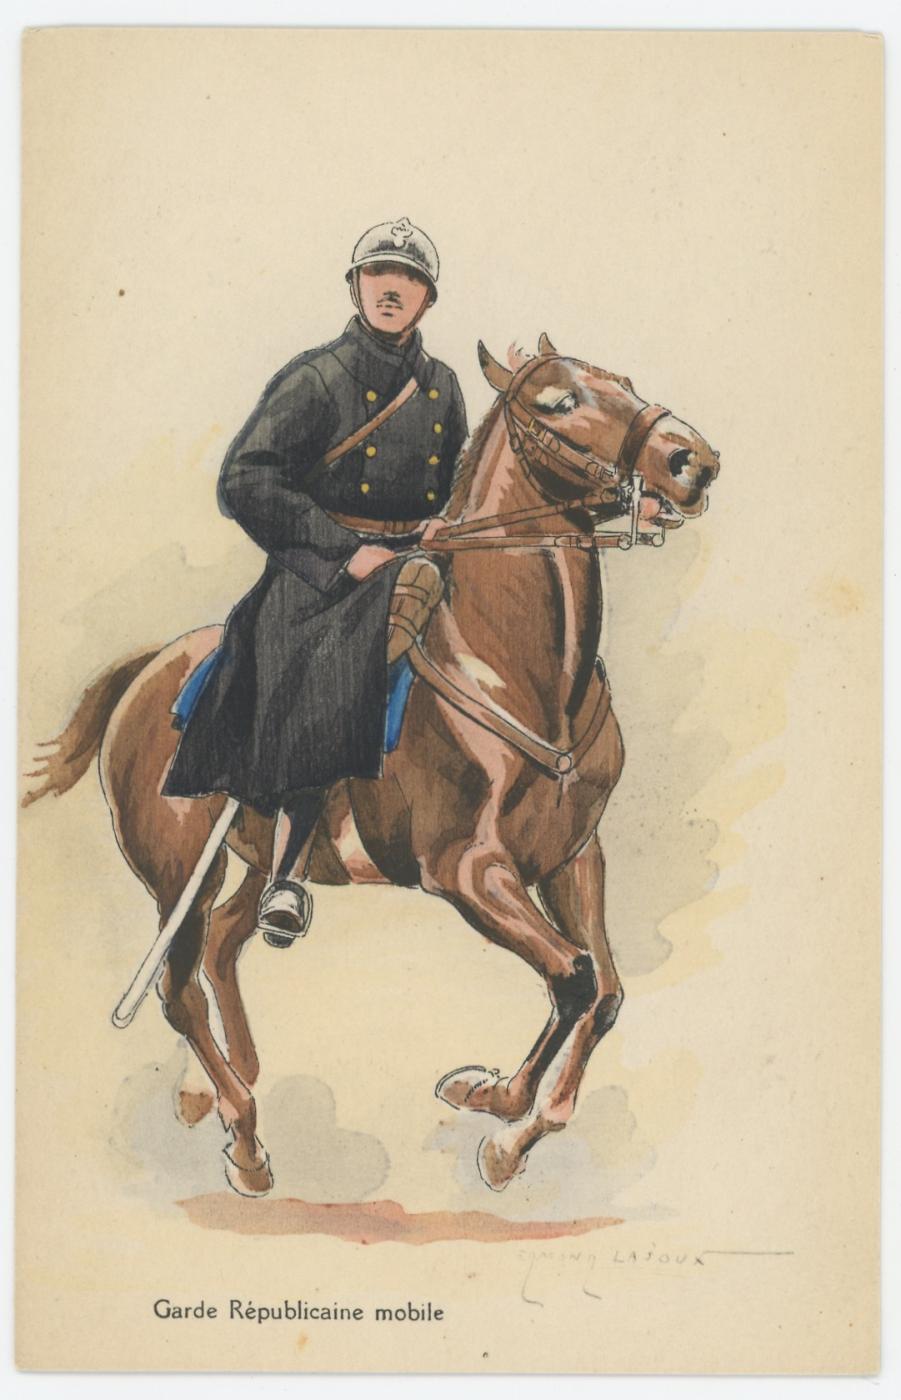 Ligne Maginot - Garde Républicaine Mobile (GRM) - Carte postale
Garde républicain mobile à cheval

